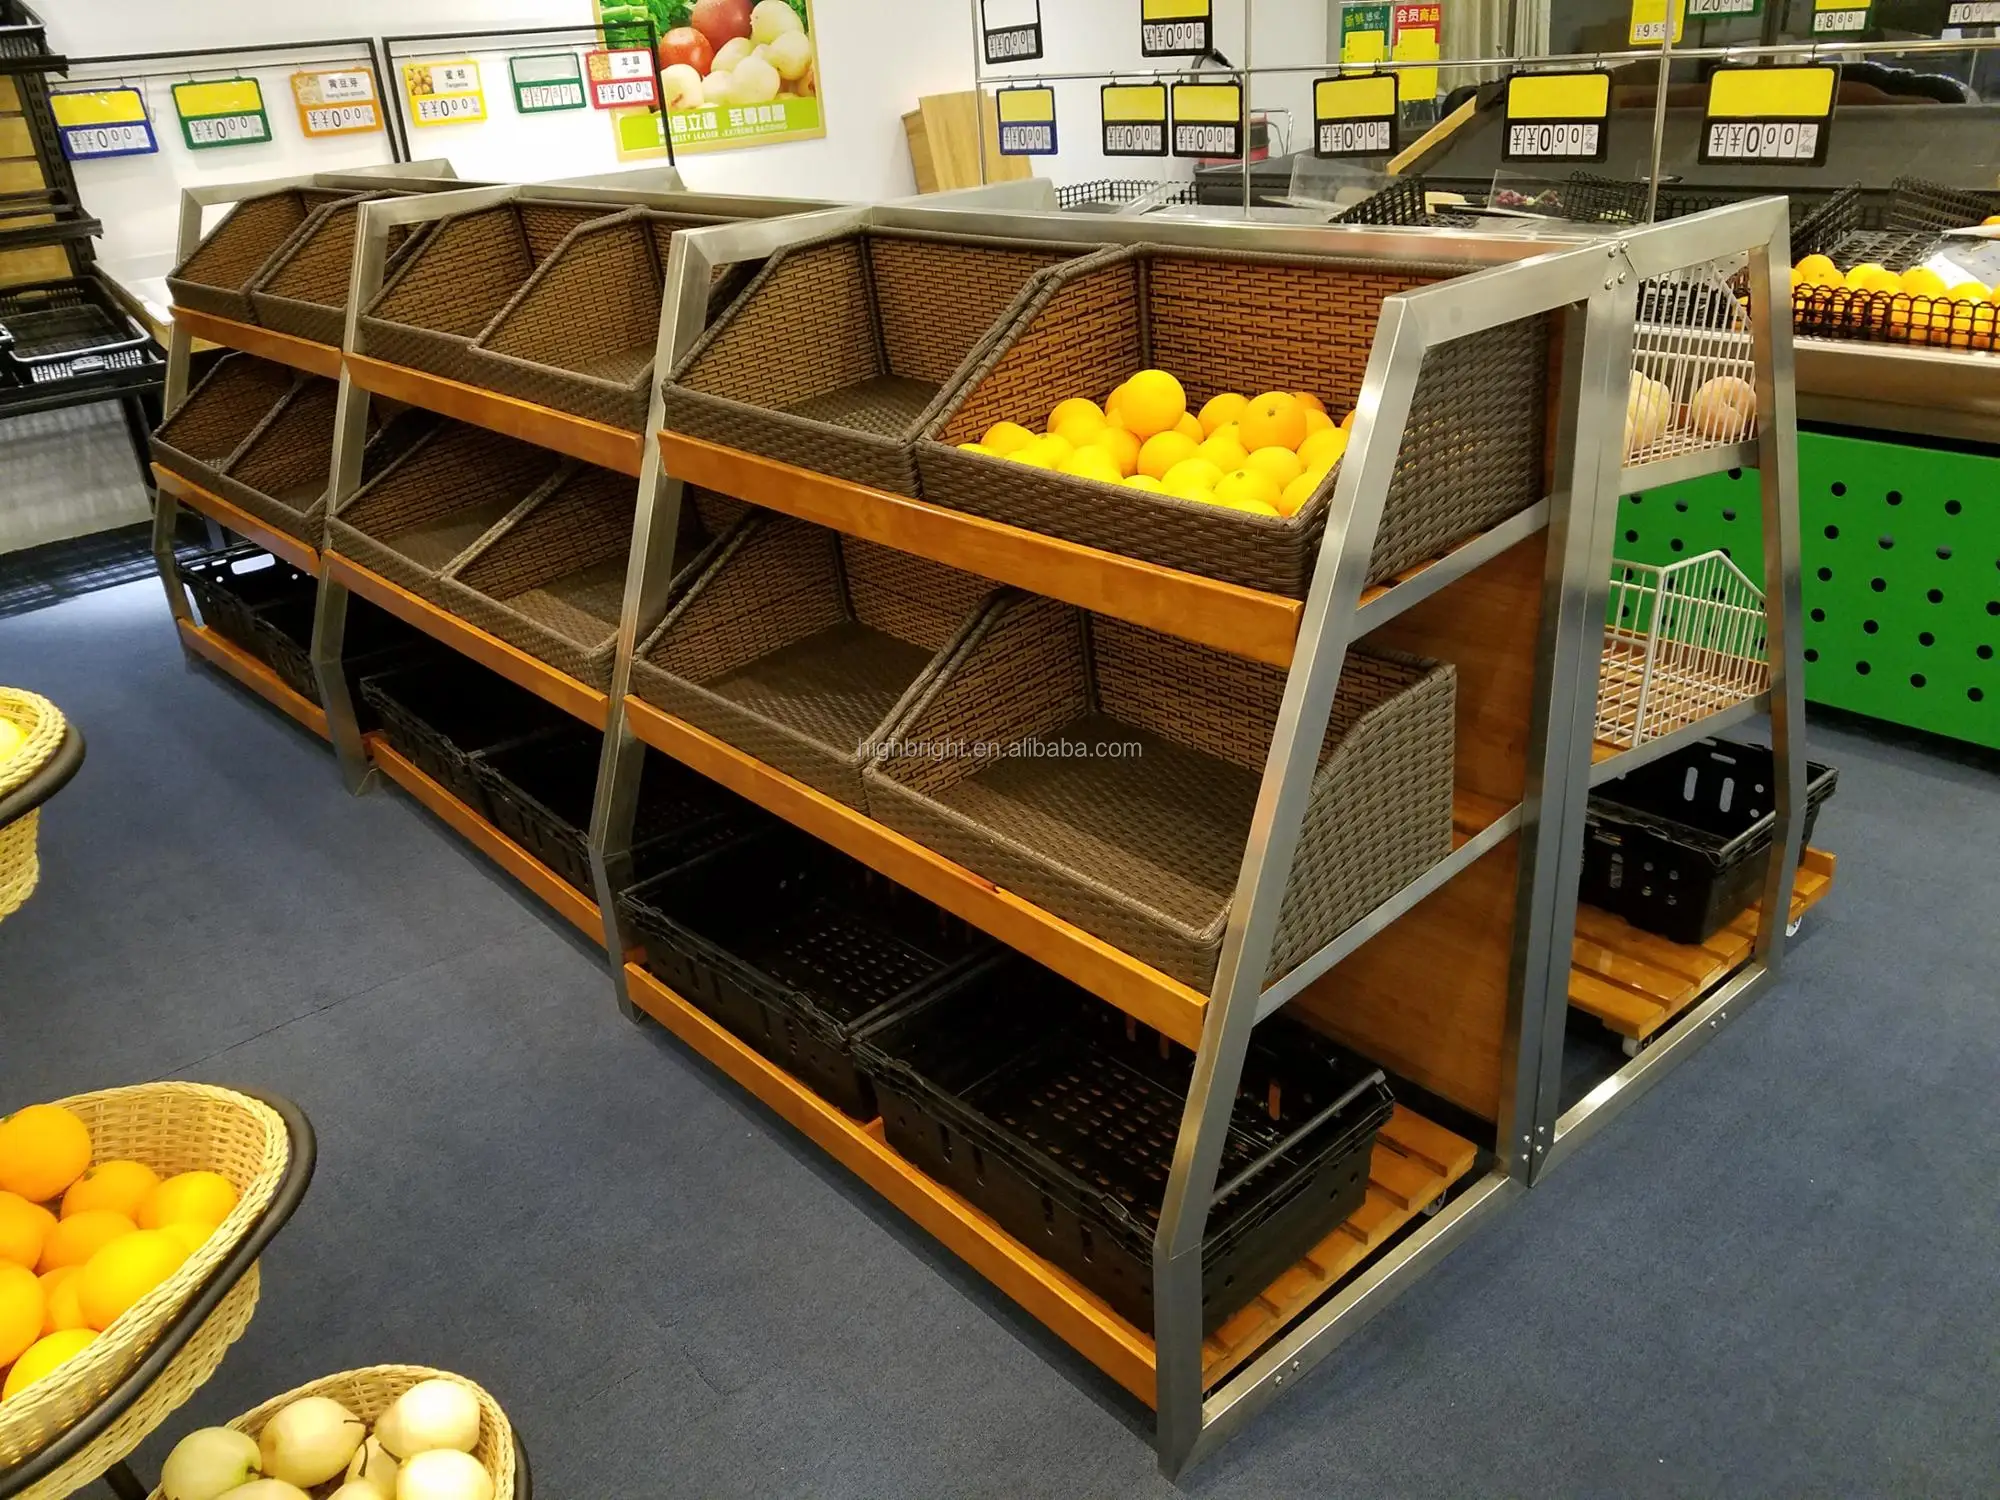 果物と野菜のディスプレイ棚を保管する Buy フルーツと野菜棚 果物や野菜のラック 野菜とフルーツディスプレイ棚 Product On Alibaba Com